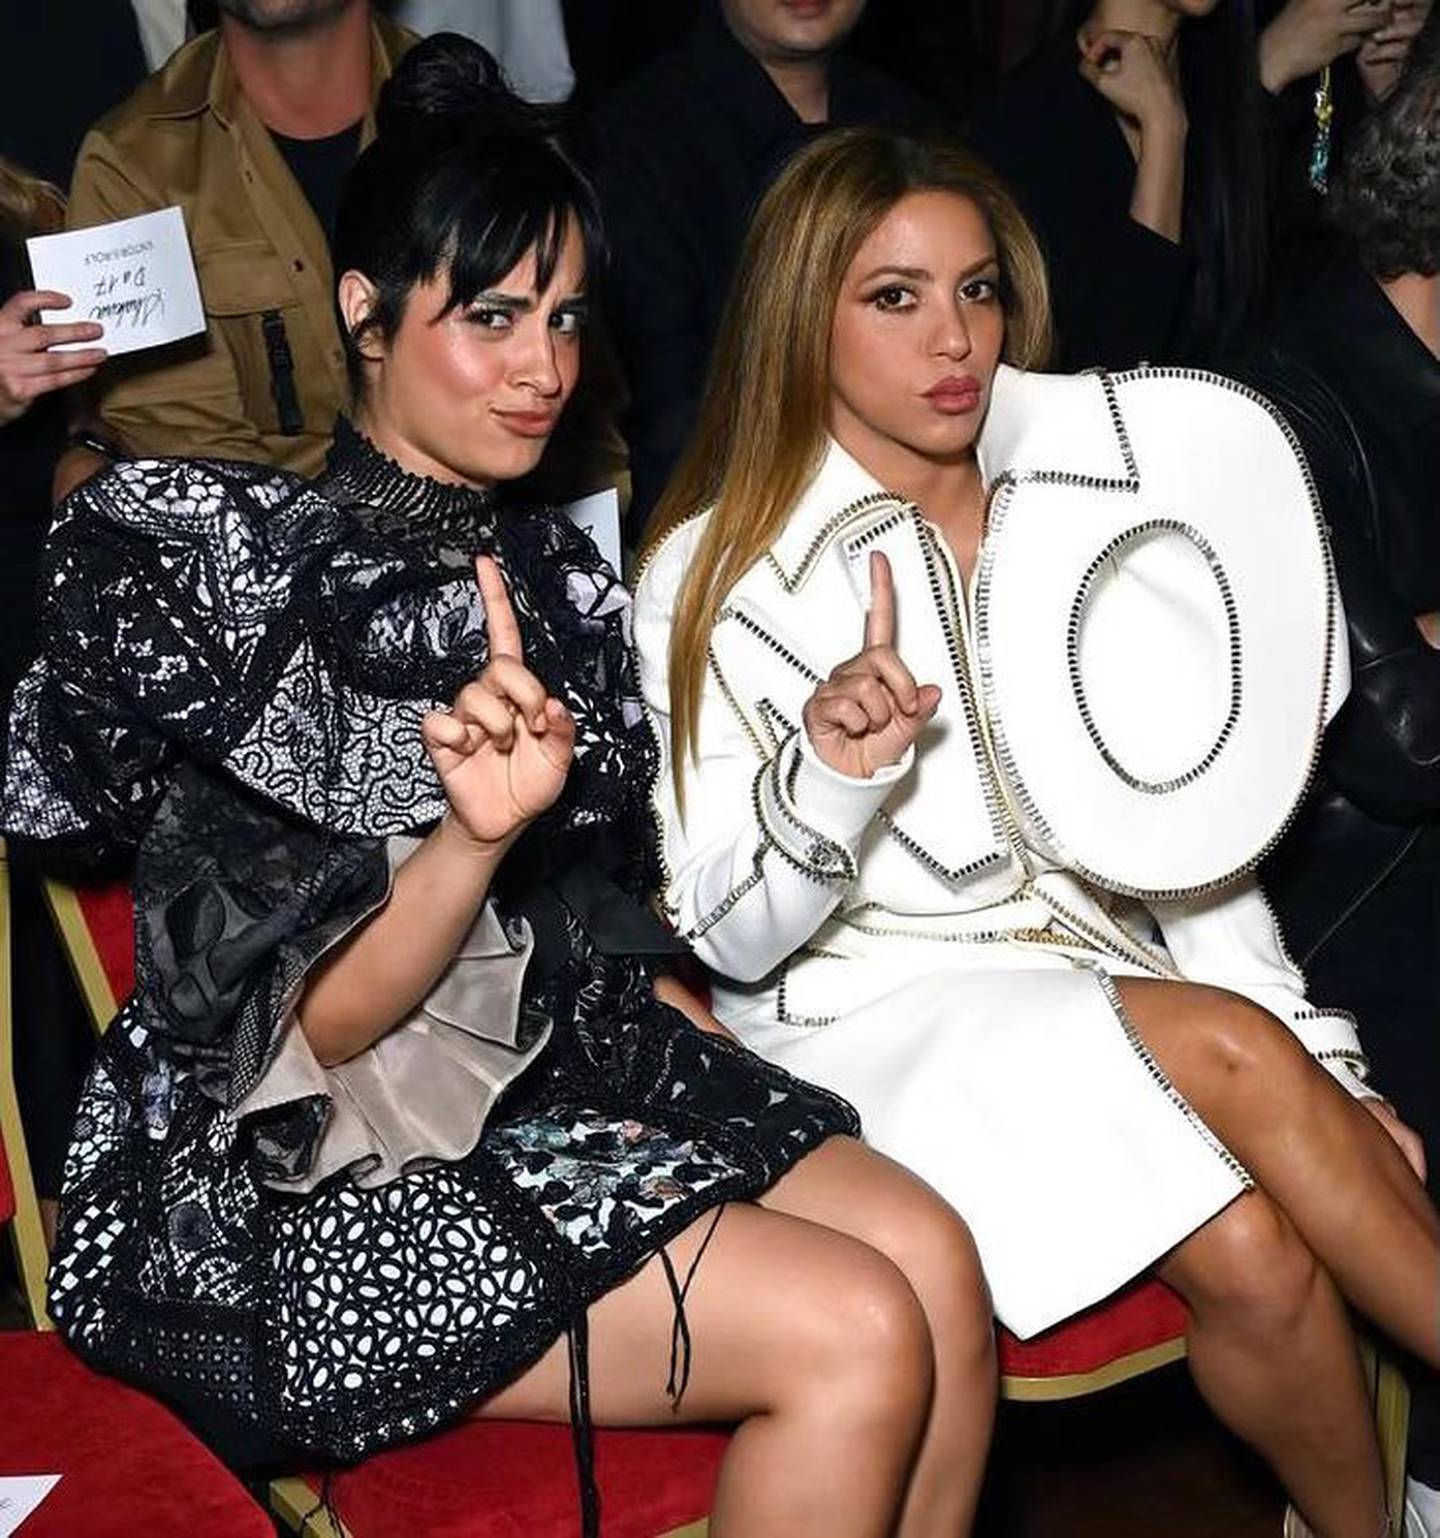 Dos mujeres sentadas haciendo un gesto de "no" con un dedo, mabas vestidas con trajes de alta costura, la primera lleva un traje oscuro con brillos y la segunda, una chaqueta larga banca con una inervención que dice NO.